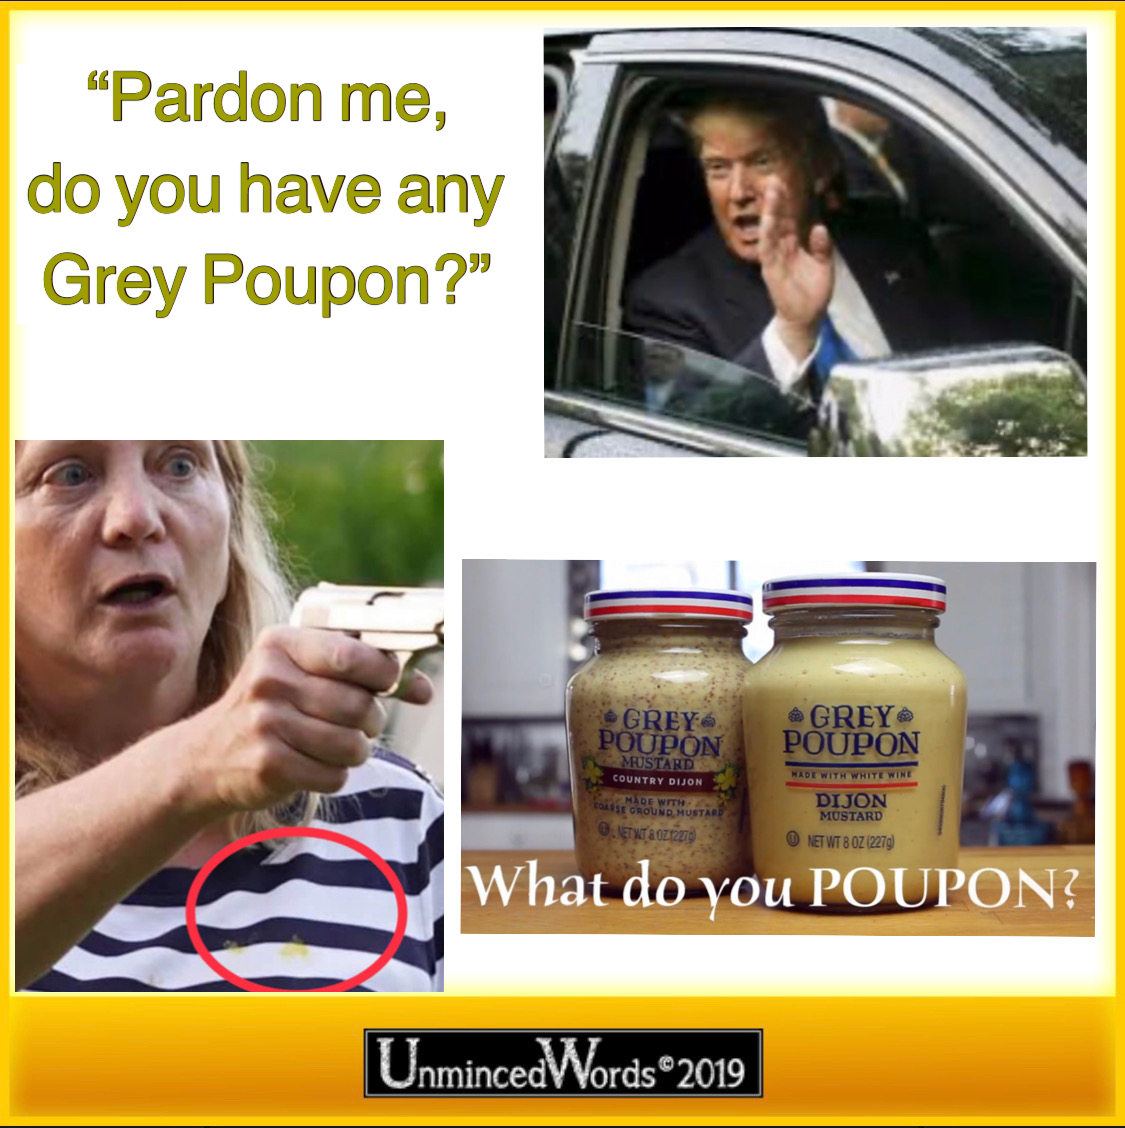 Pardon me, Karen, do you have any Grey Poupon?